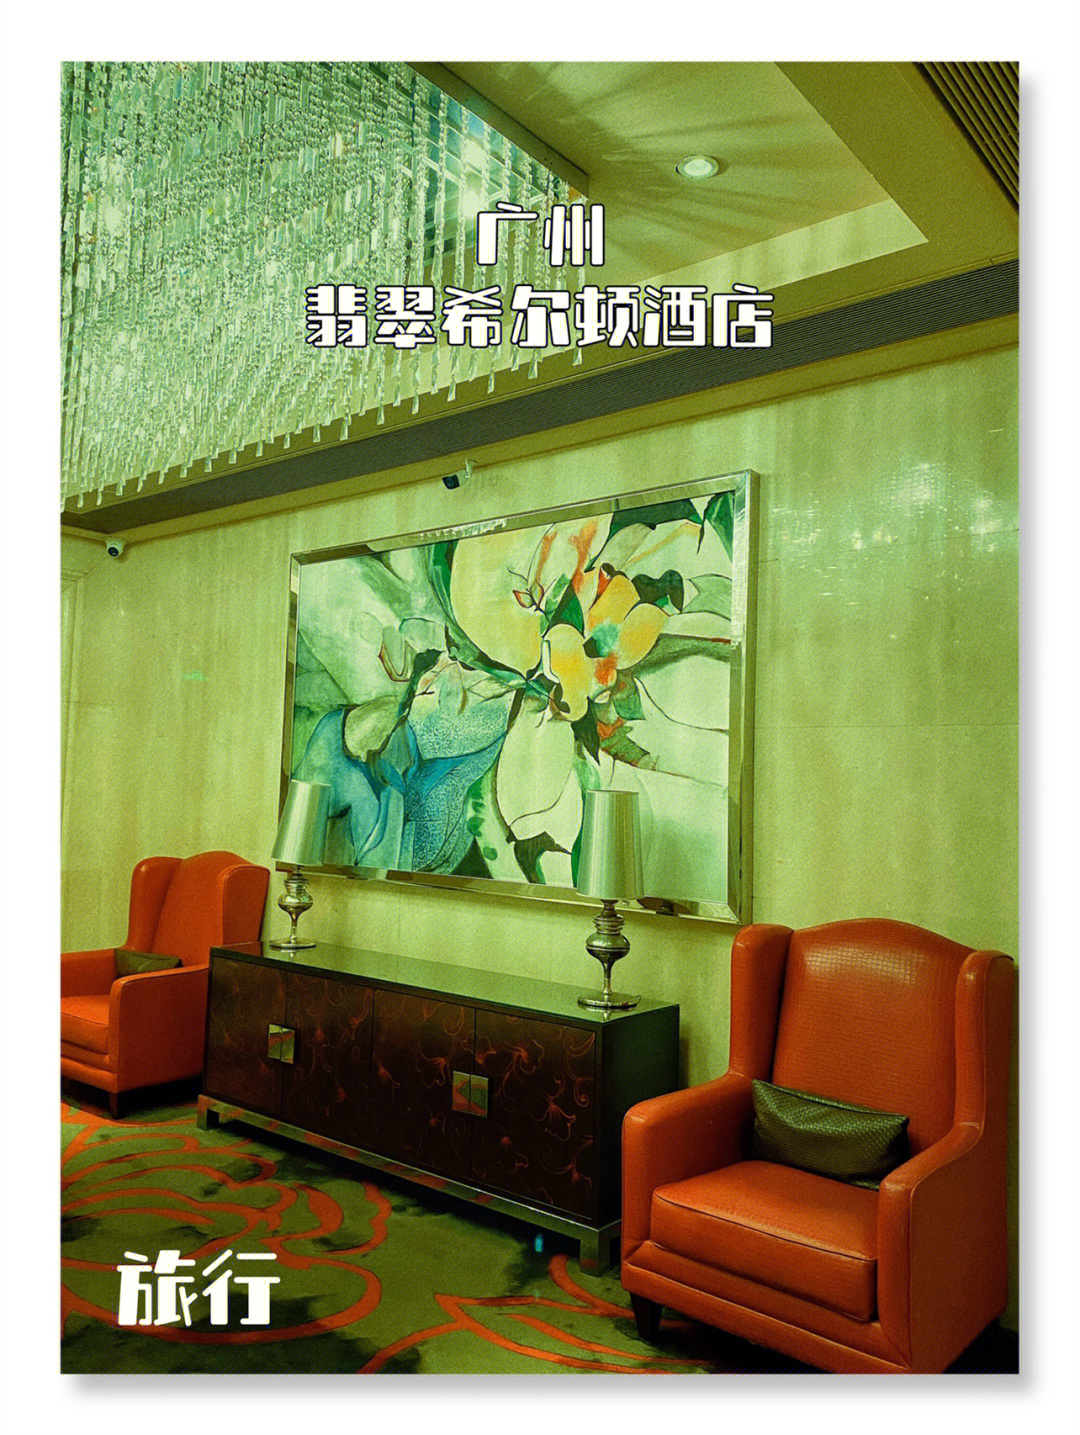 在广州找到一家有王家卫电影feel的五星酒店